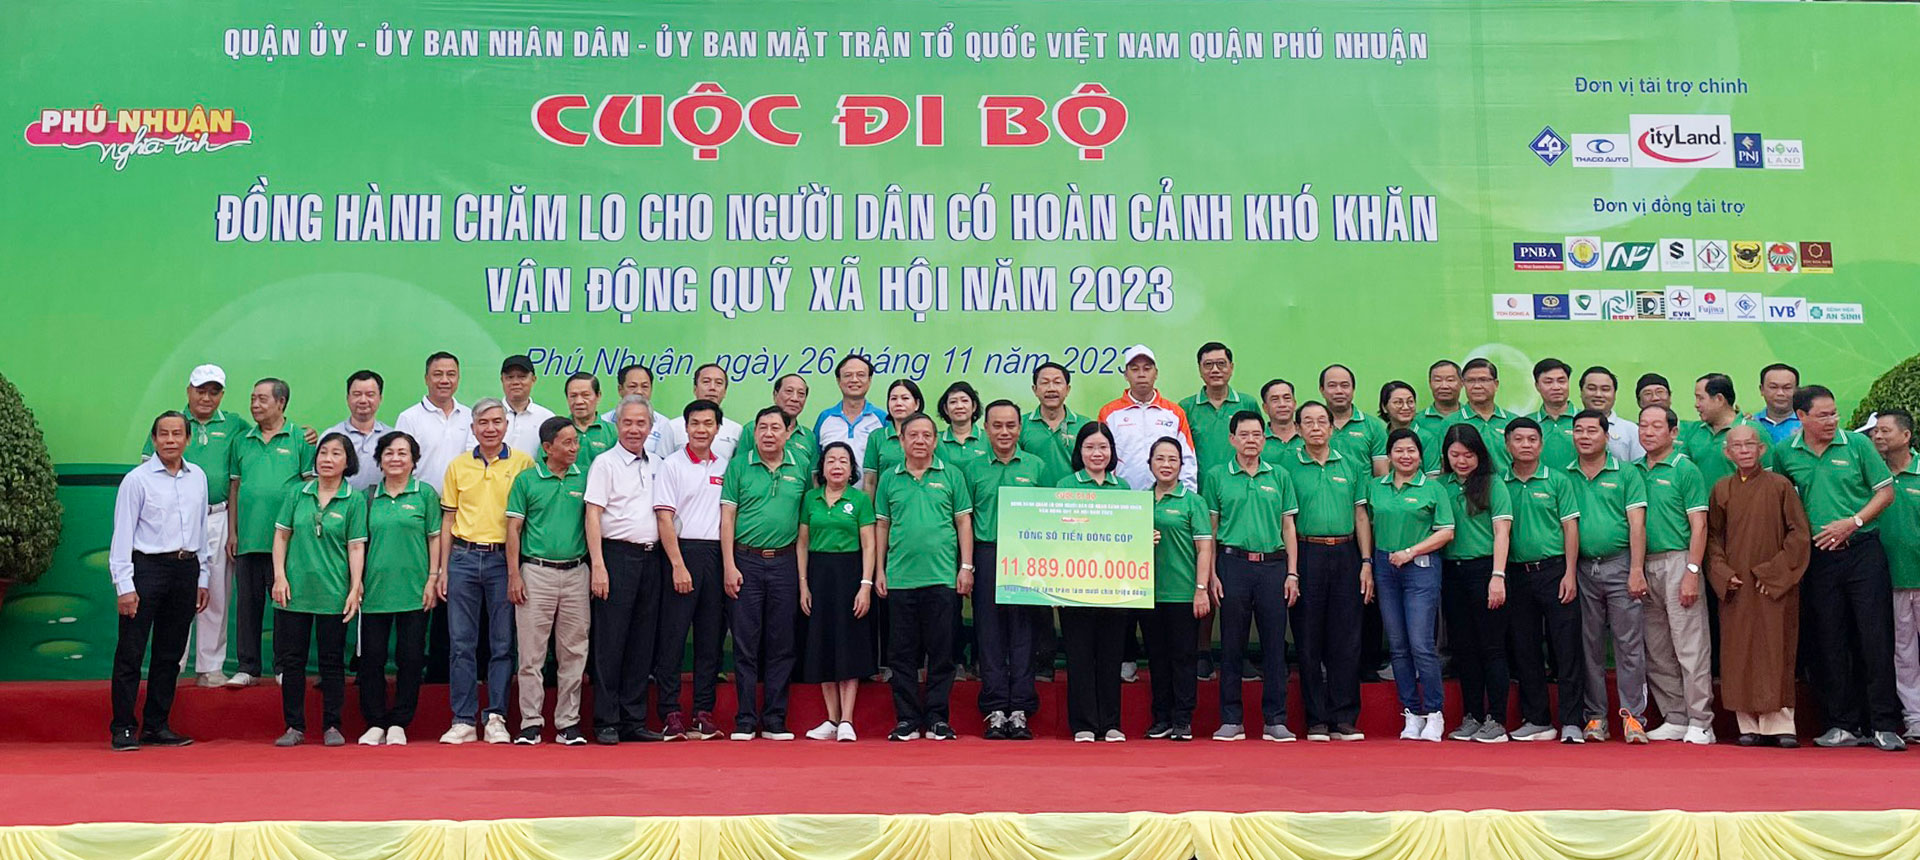 THACO AUTO đồng hành cùng Quỹ Xã hội quận Phú Nhuận